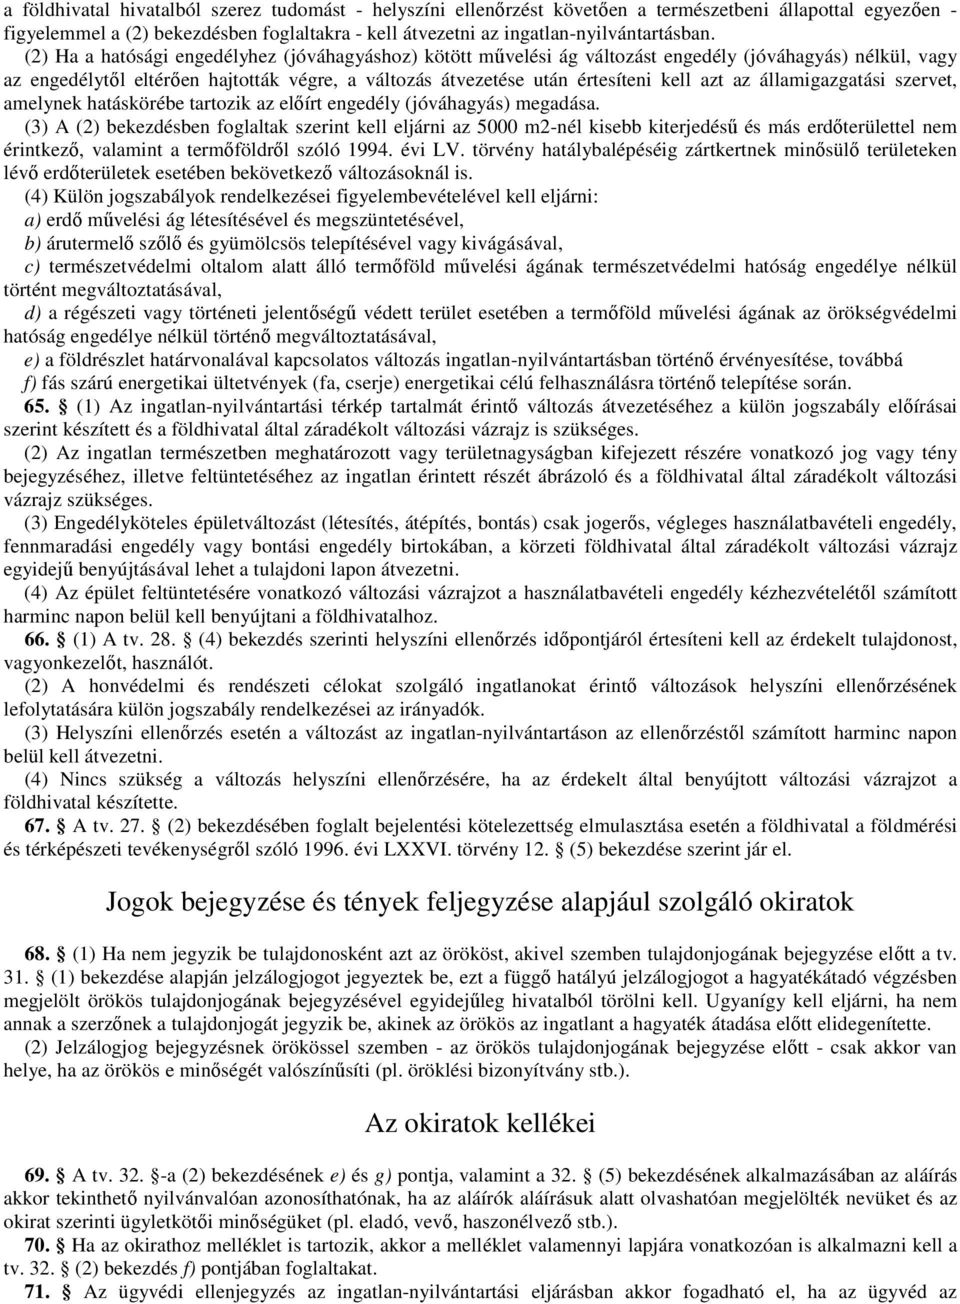 az államigazgatási szervet, amelynek hatáskörébe tartozik az elıírt engedély (jóváhagyás) megadása.